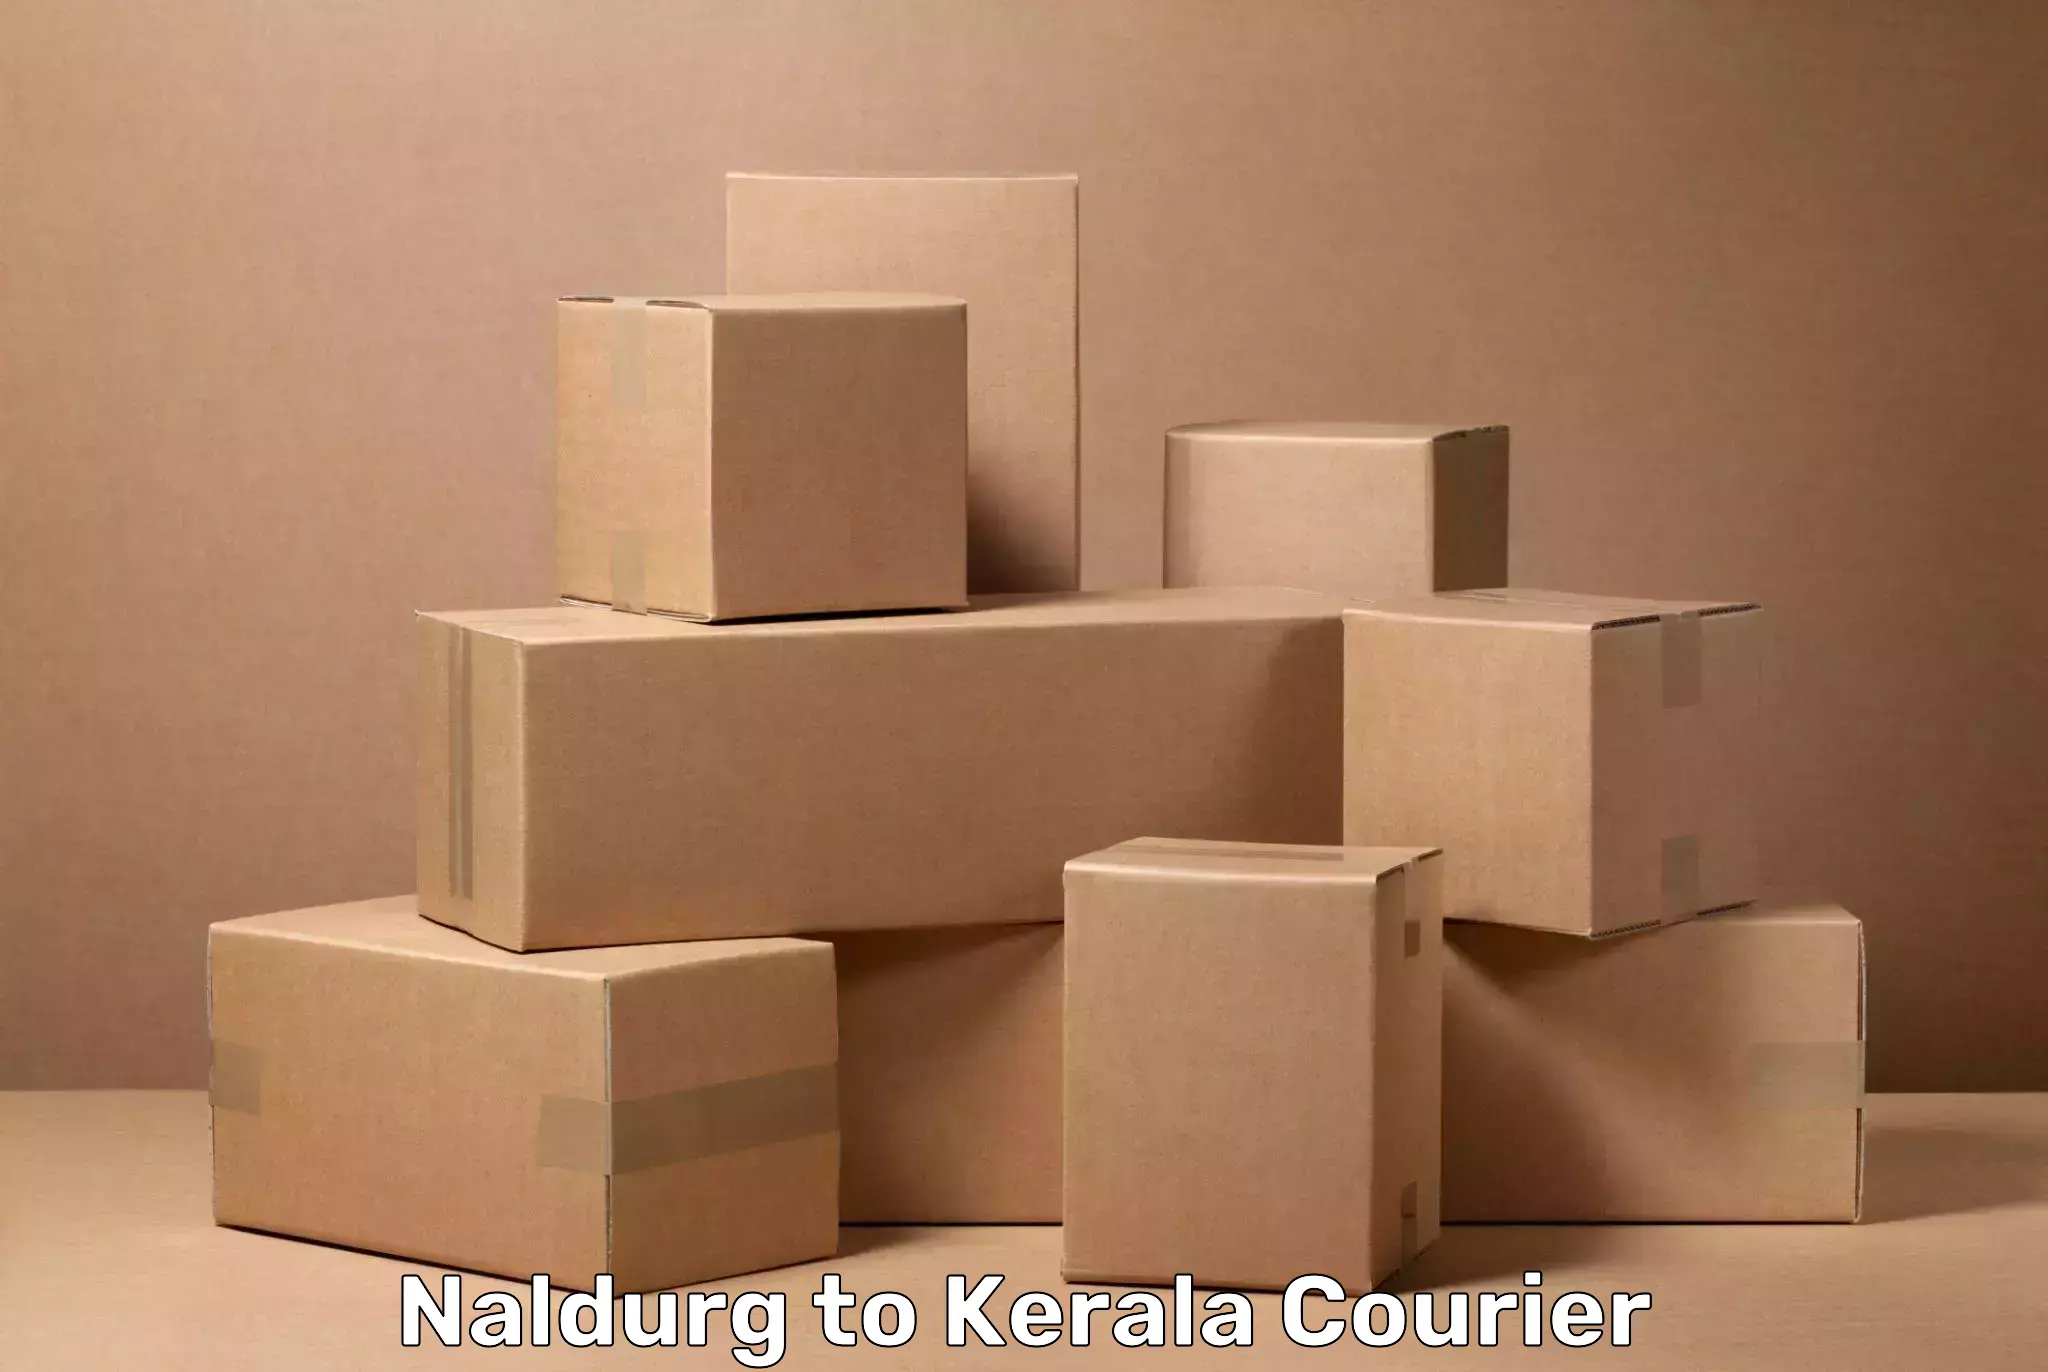 Luggage delivery logistics Naldurg to IIIT Kottayam